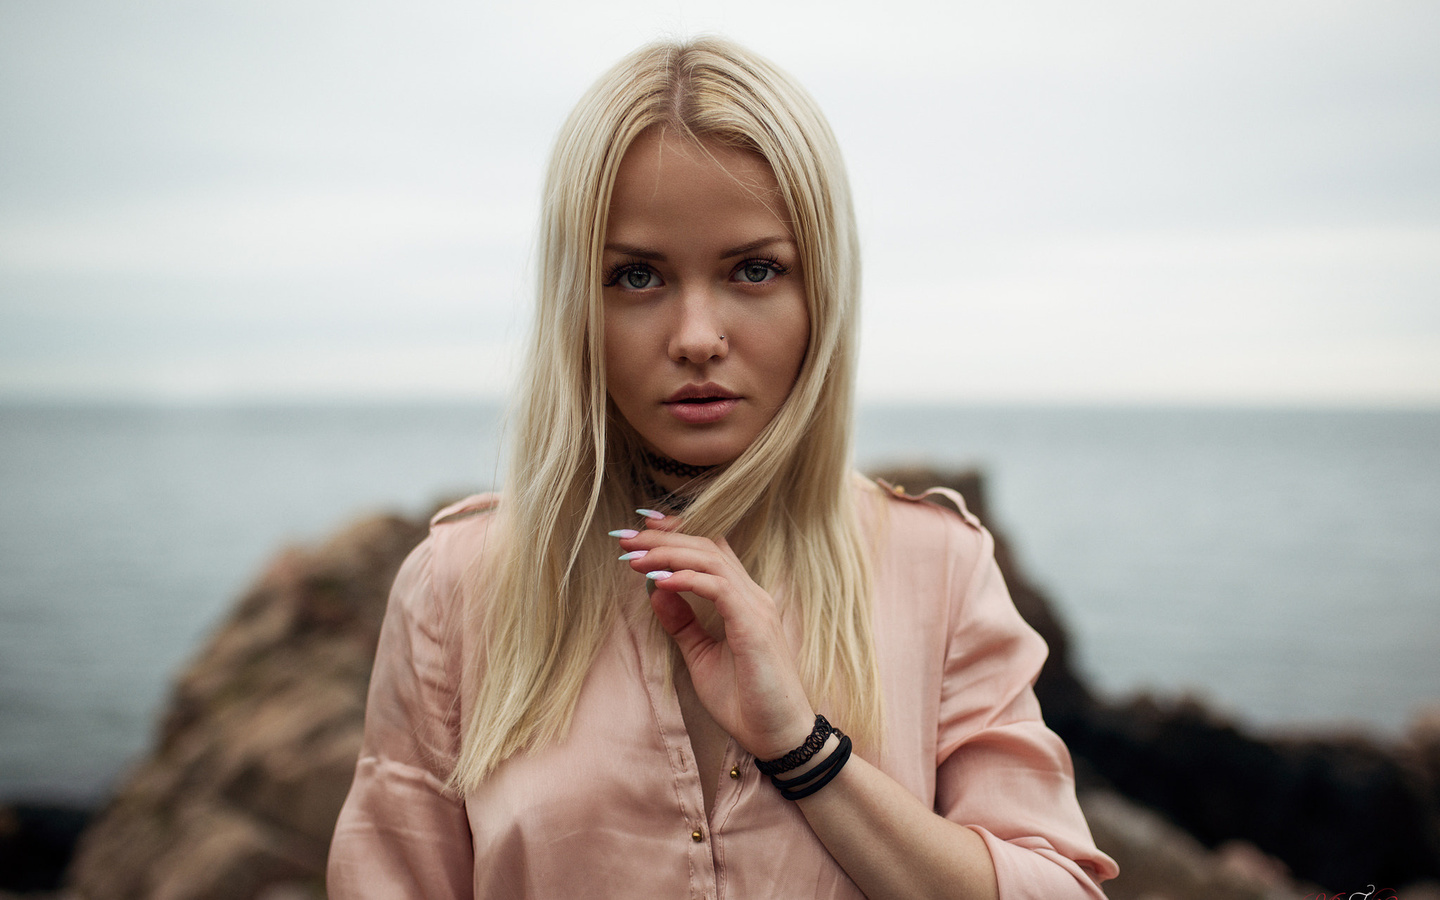 women, alicja sedzielewska, blonde, sea, pierced nose, portrait, depth of field, women outdoors